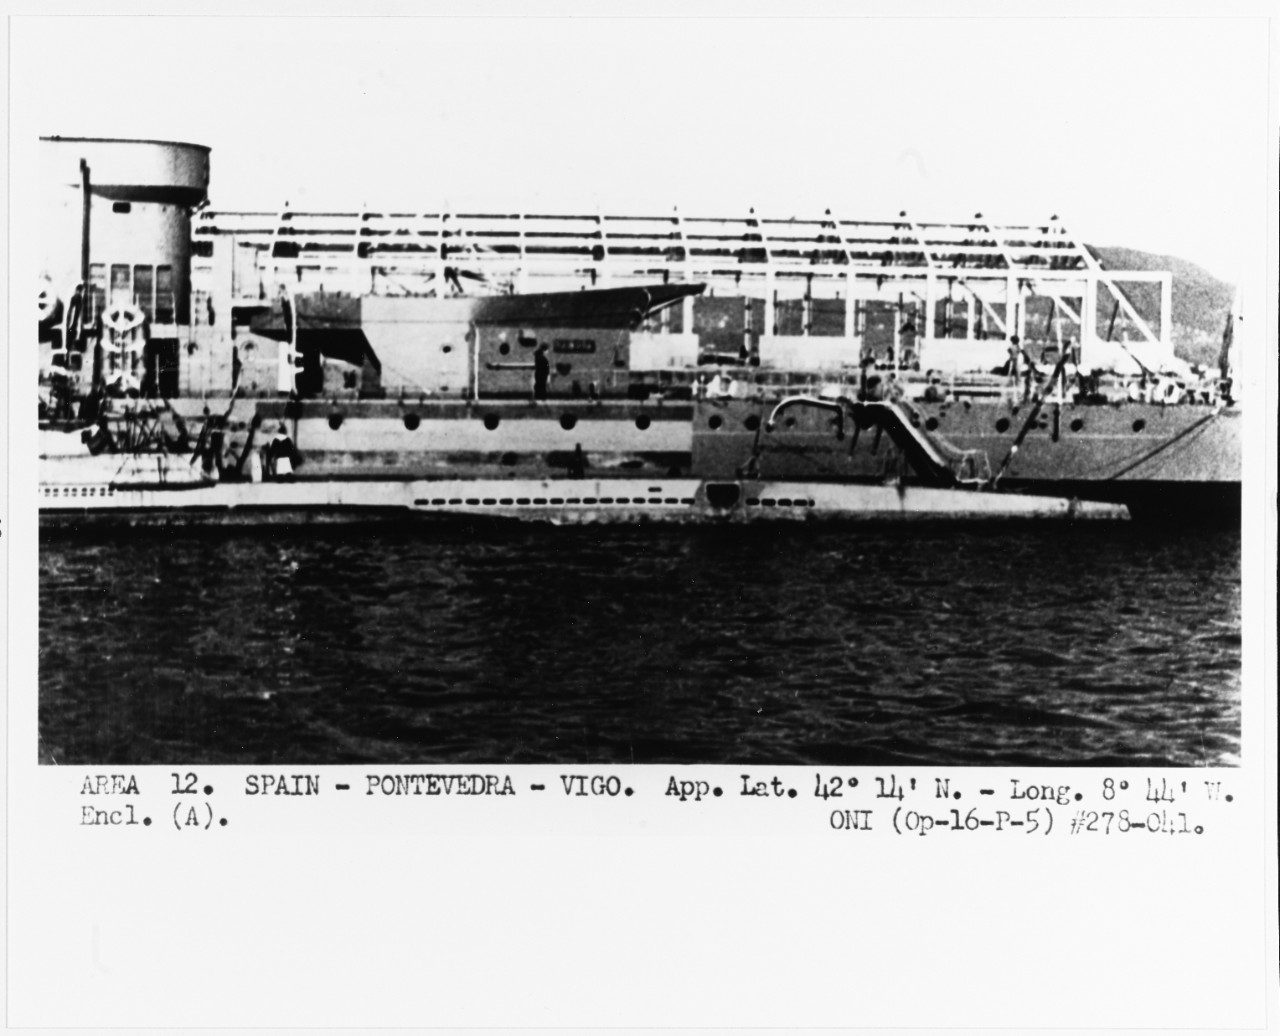 NAVARRA (Spanish cruiser, 1920-1956)